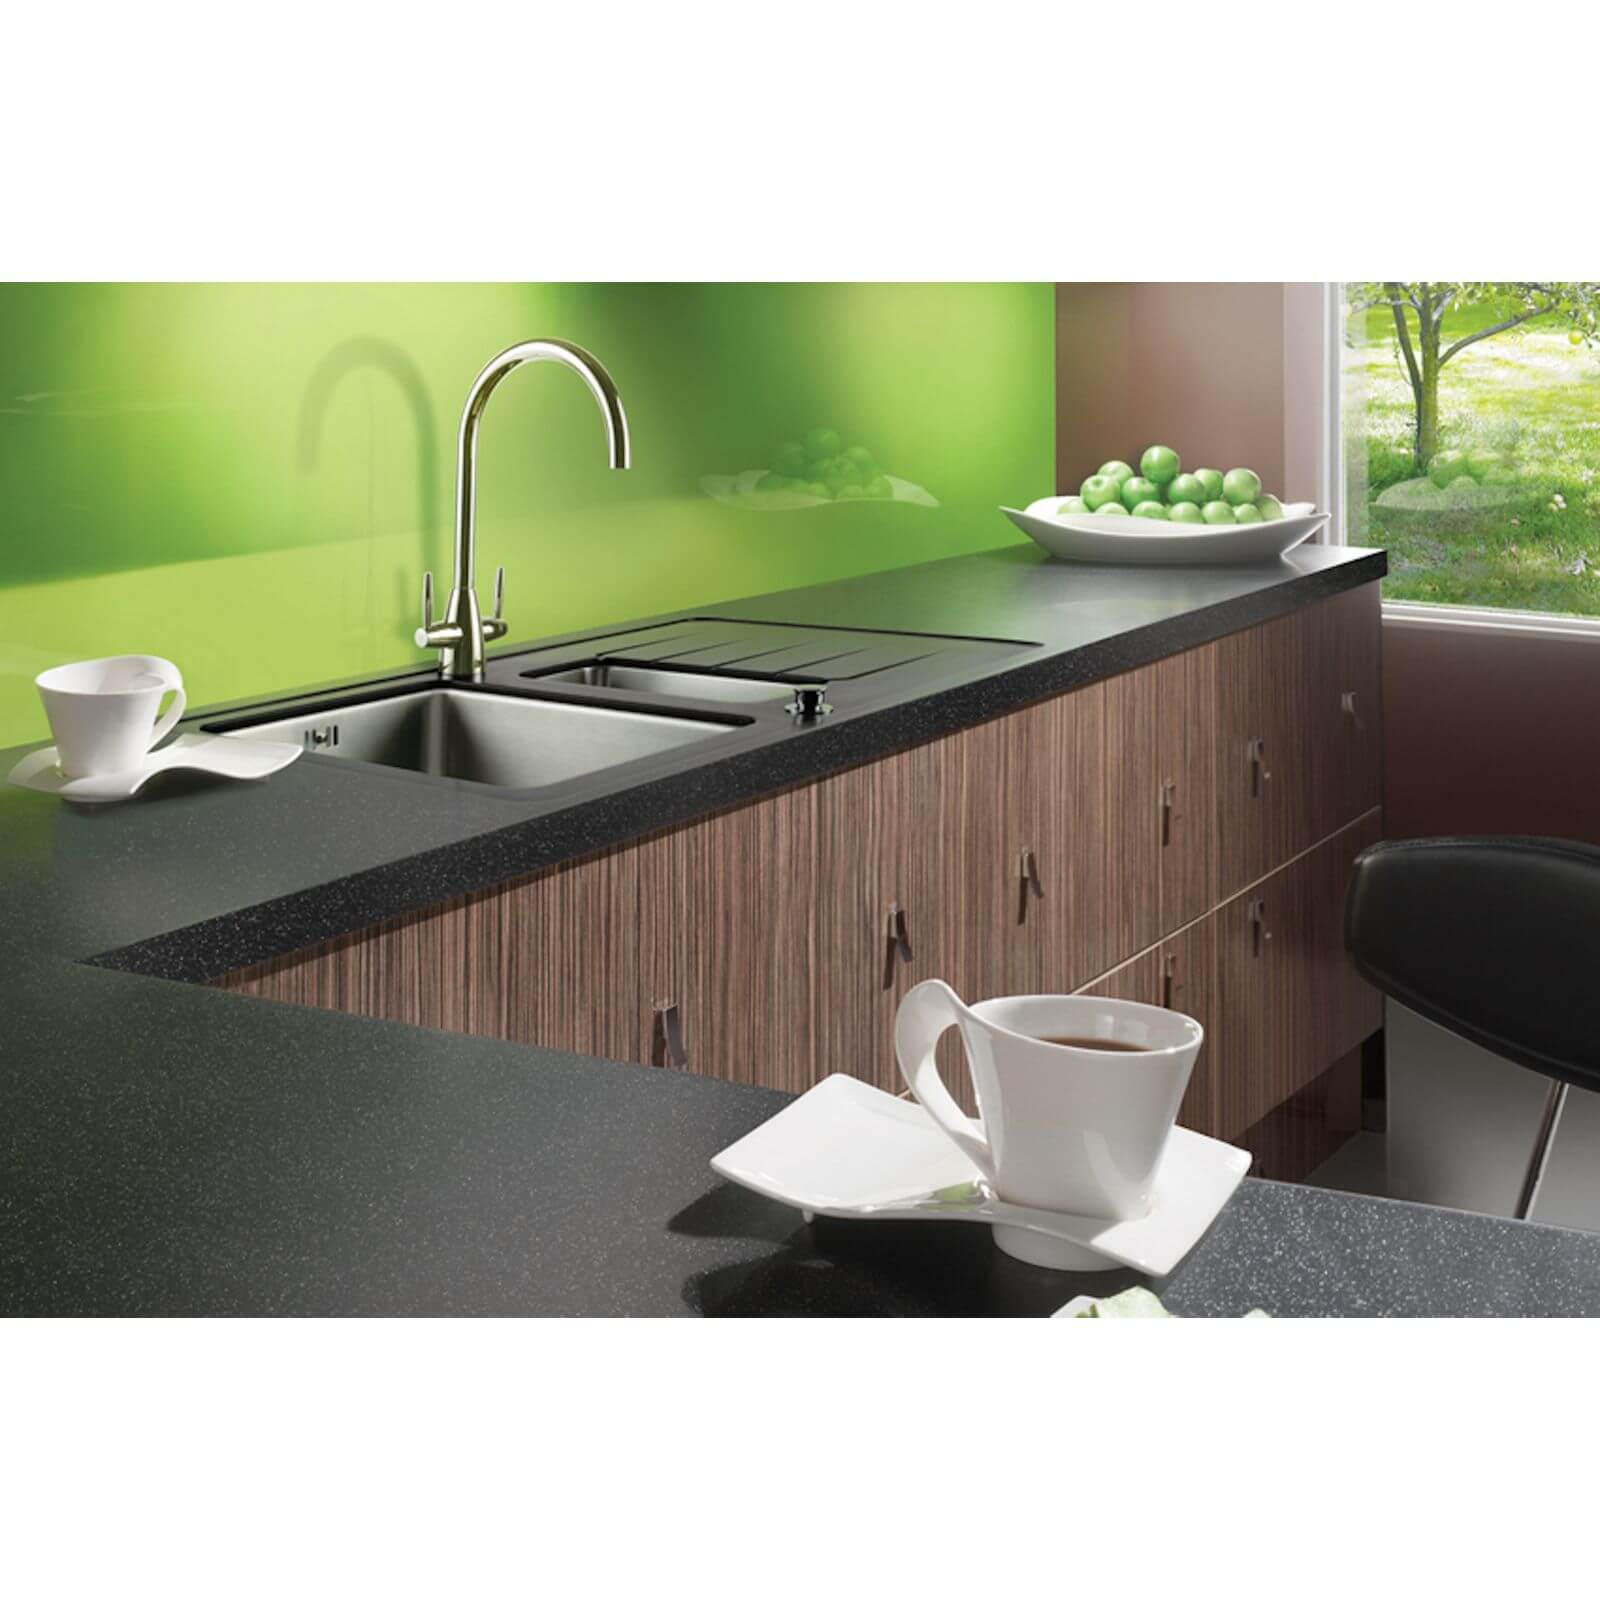 Maia Galaxy Kitchen Worktop R235 - 60 x 60 x 2.8cm